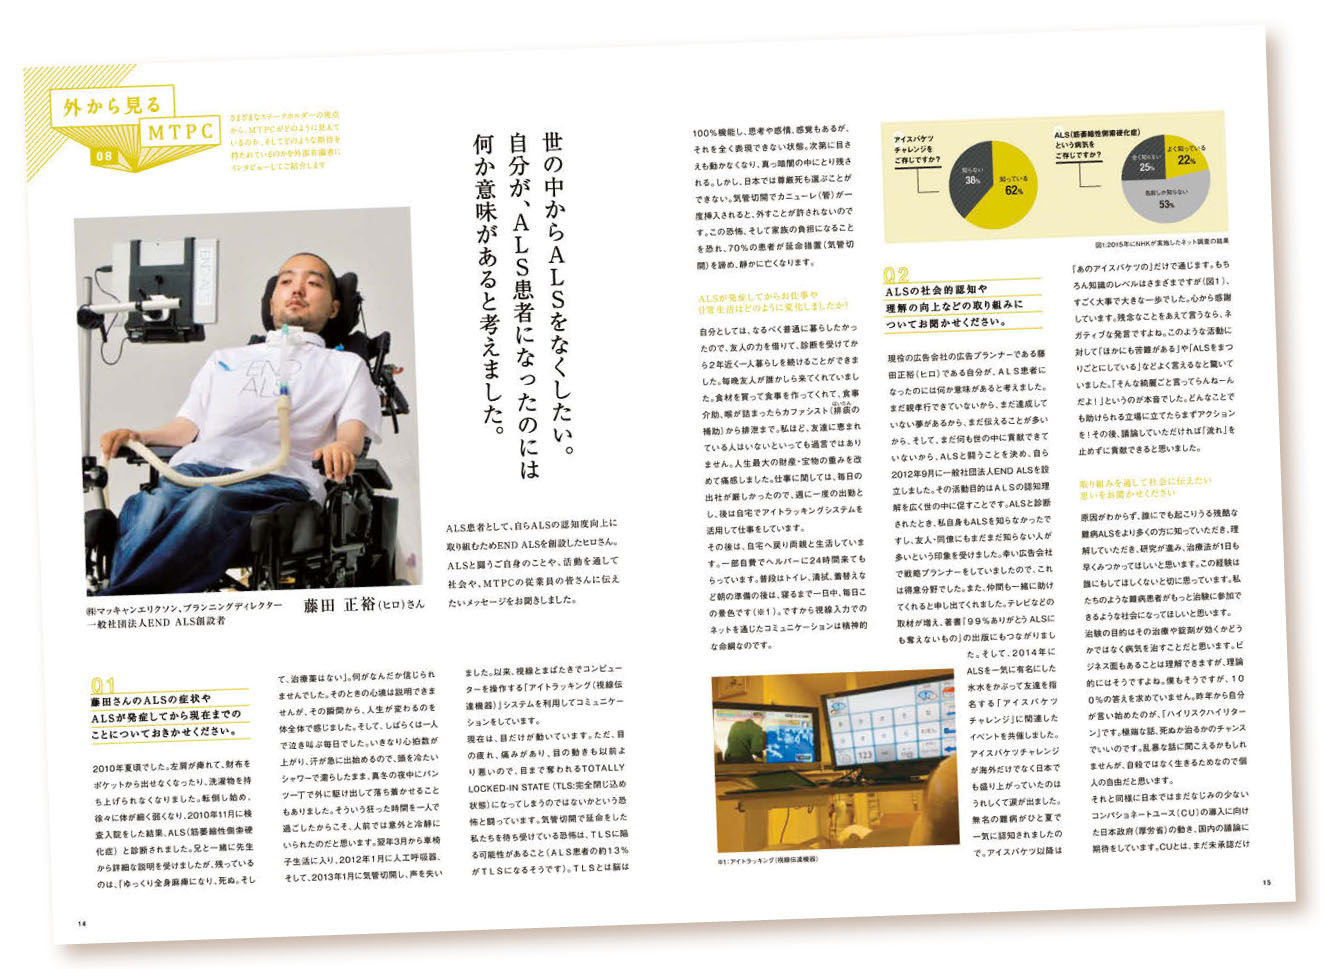 積極的な社外取材を実施 田辺三菱製薬の社内報制作のポイント 広報会議デジタル版